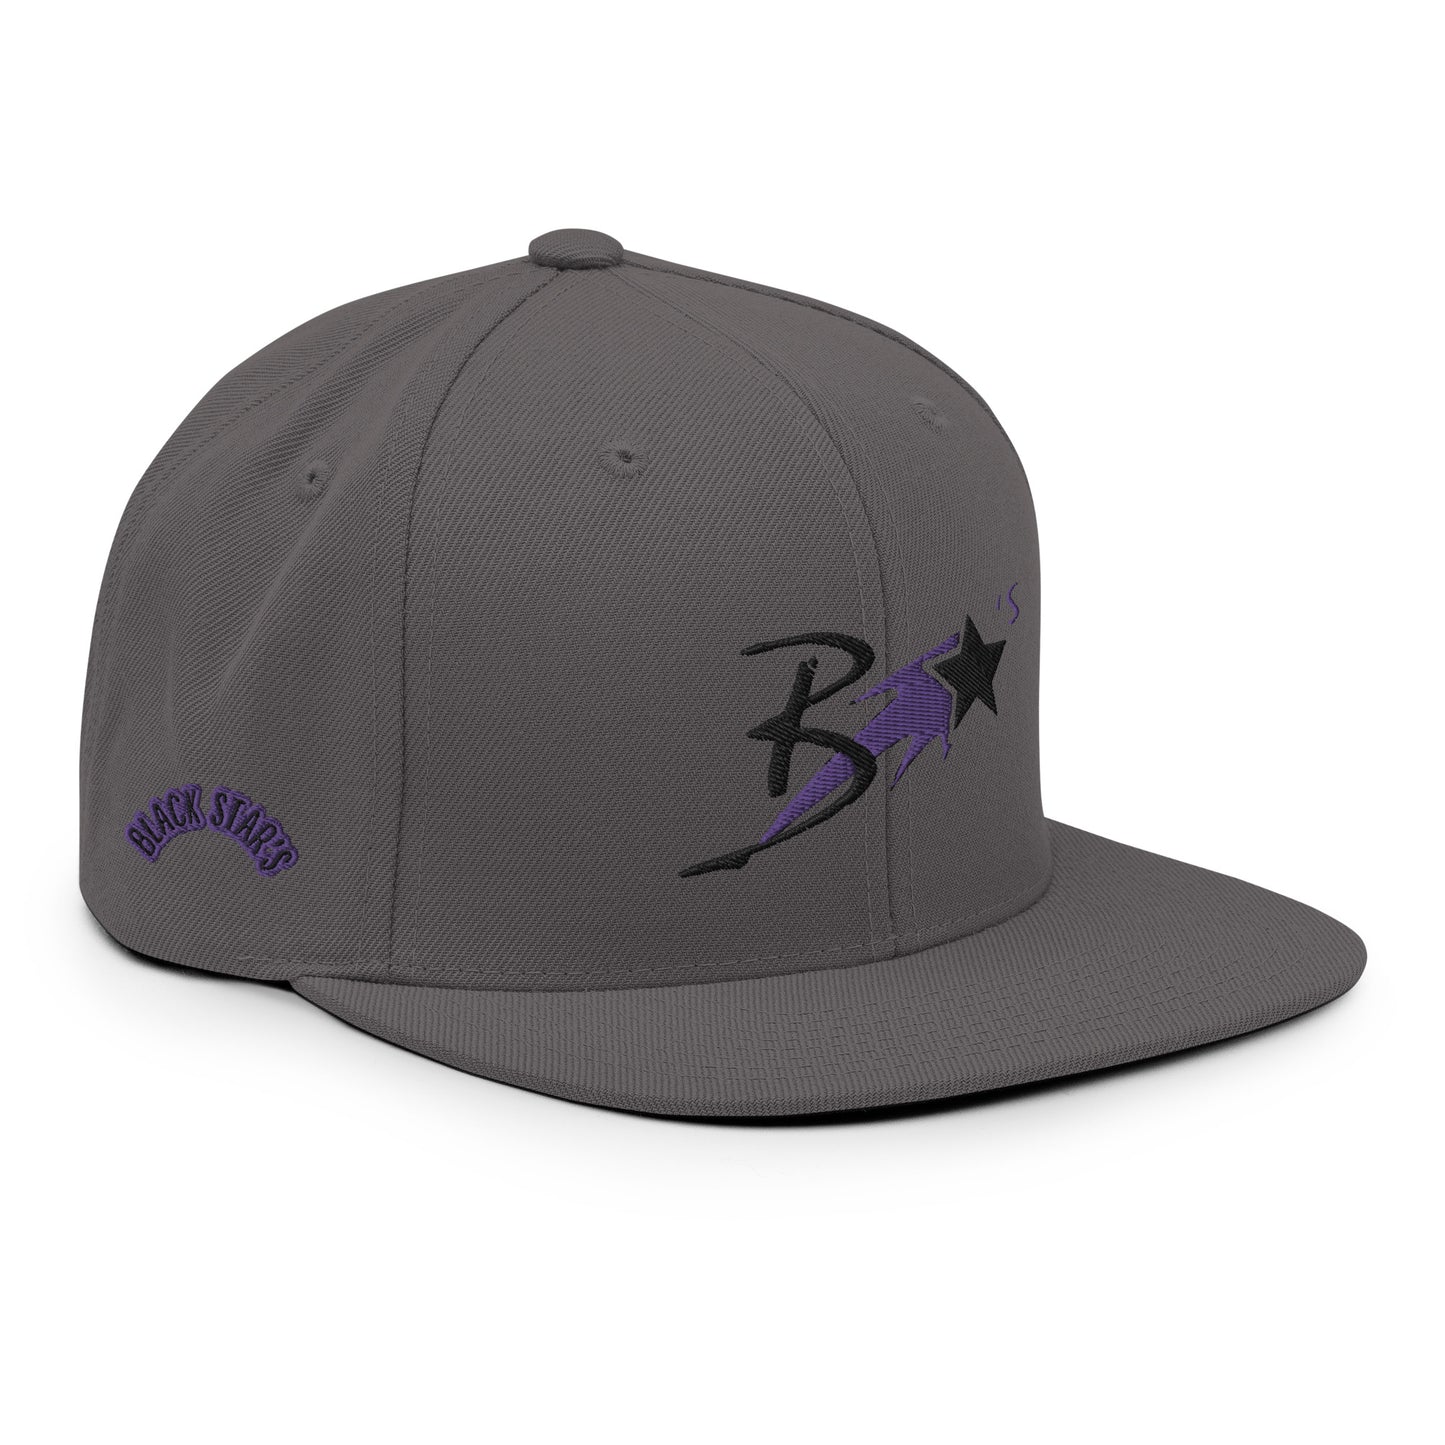 Blcak Star's Snapback Hat